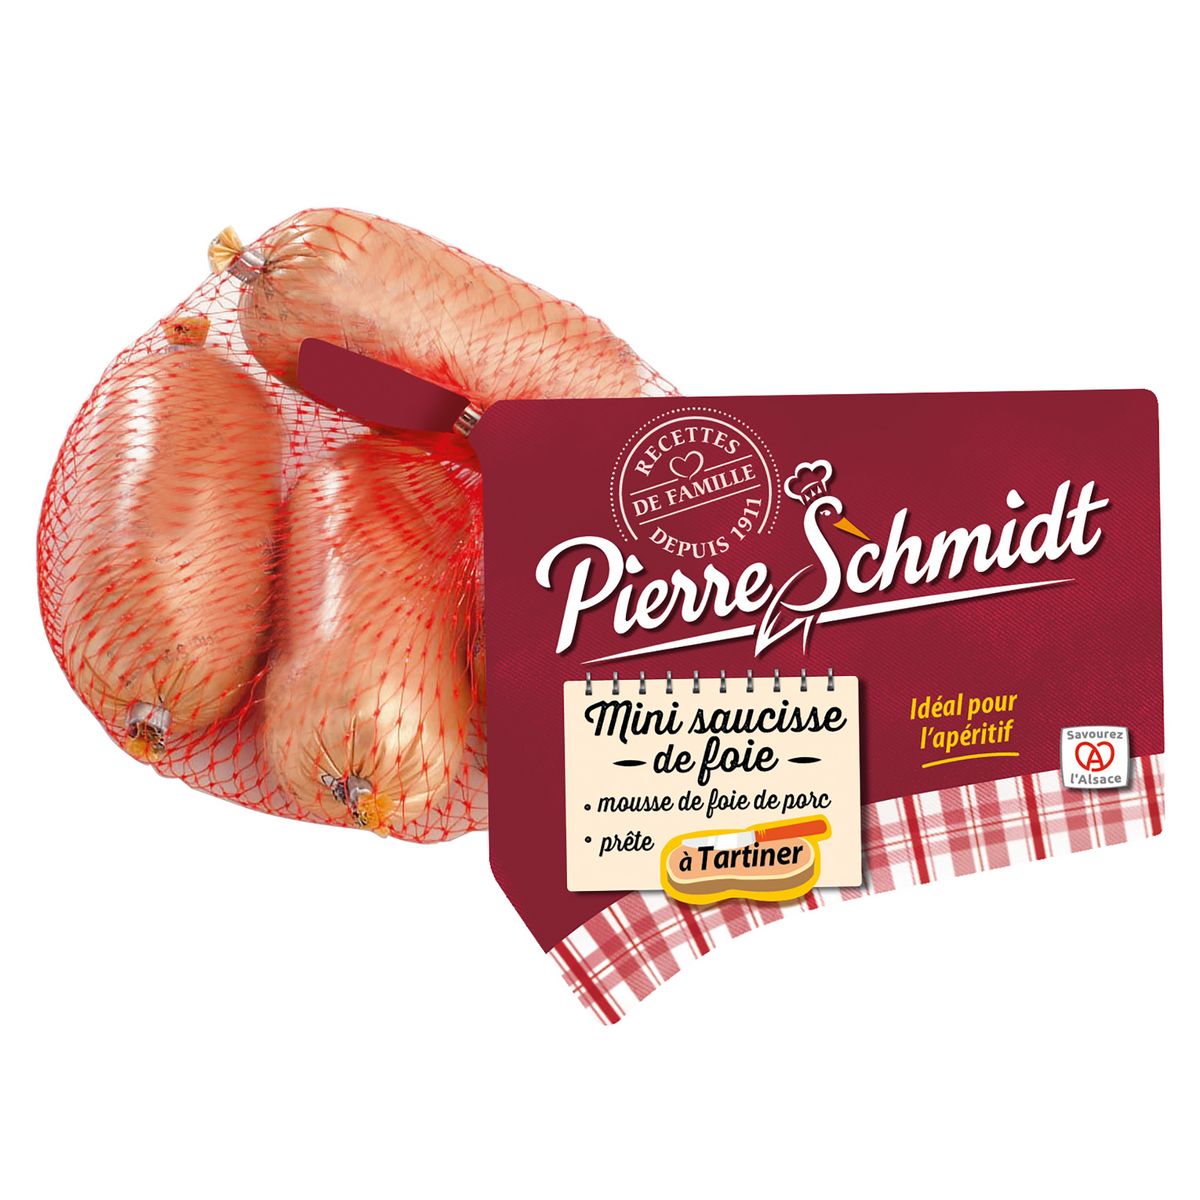 PIERRE SCHMIDT Mini saucisses de foie 4 pièces 160g